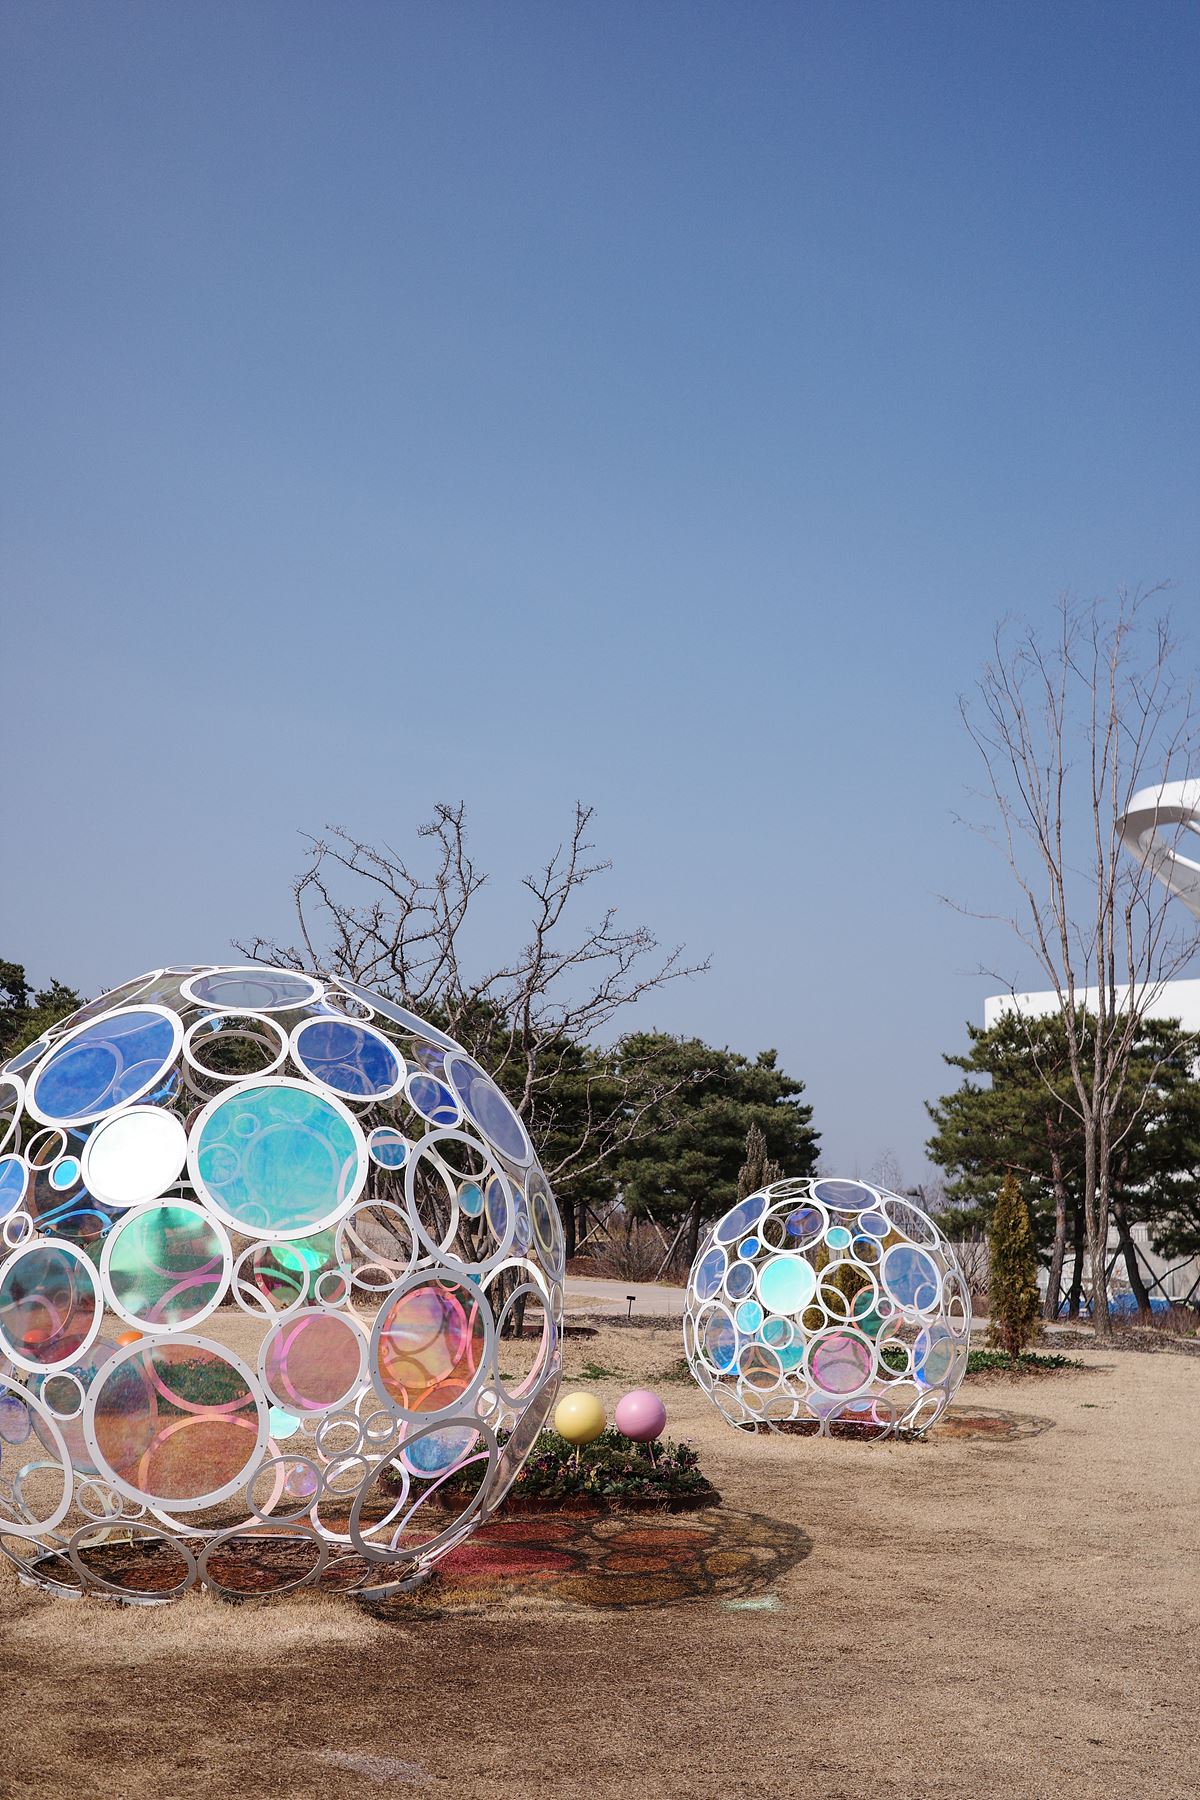 서울식물원